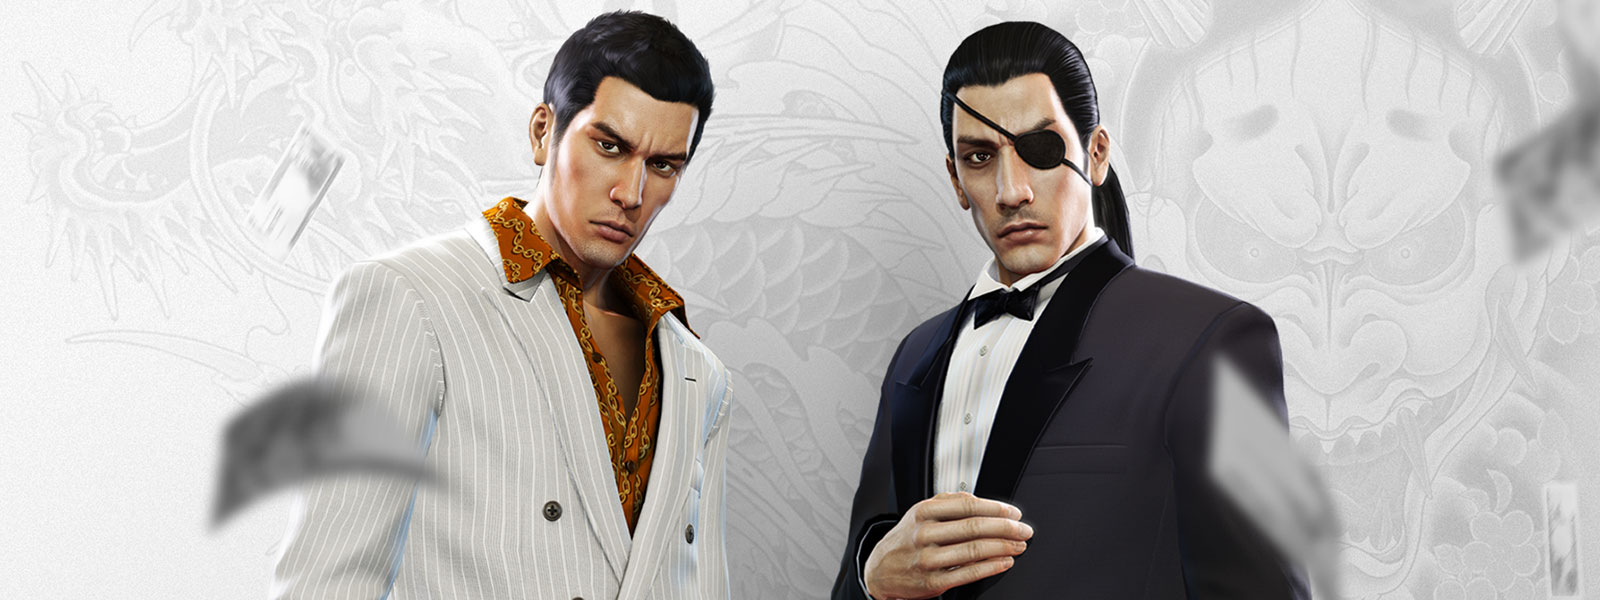 Δύο χαρακτήρες Yakuza με φανταχτερά κοστούμια που κοιτάζουν καθώς πέφτουν χρήματα γύρω τους, με ένα λευκό και γκρι φόντο ενός τατουάζ δράκου